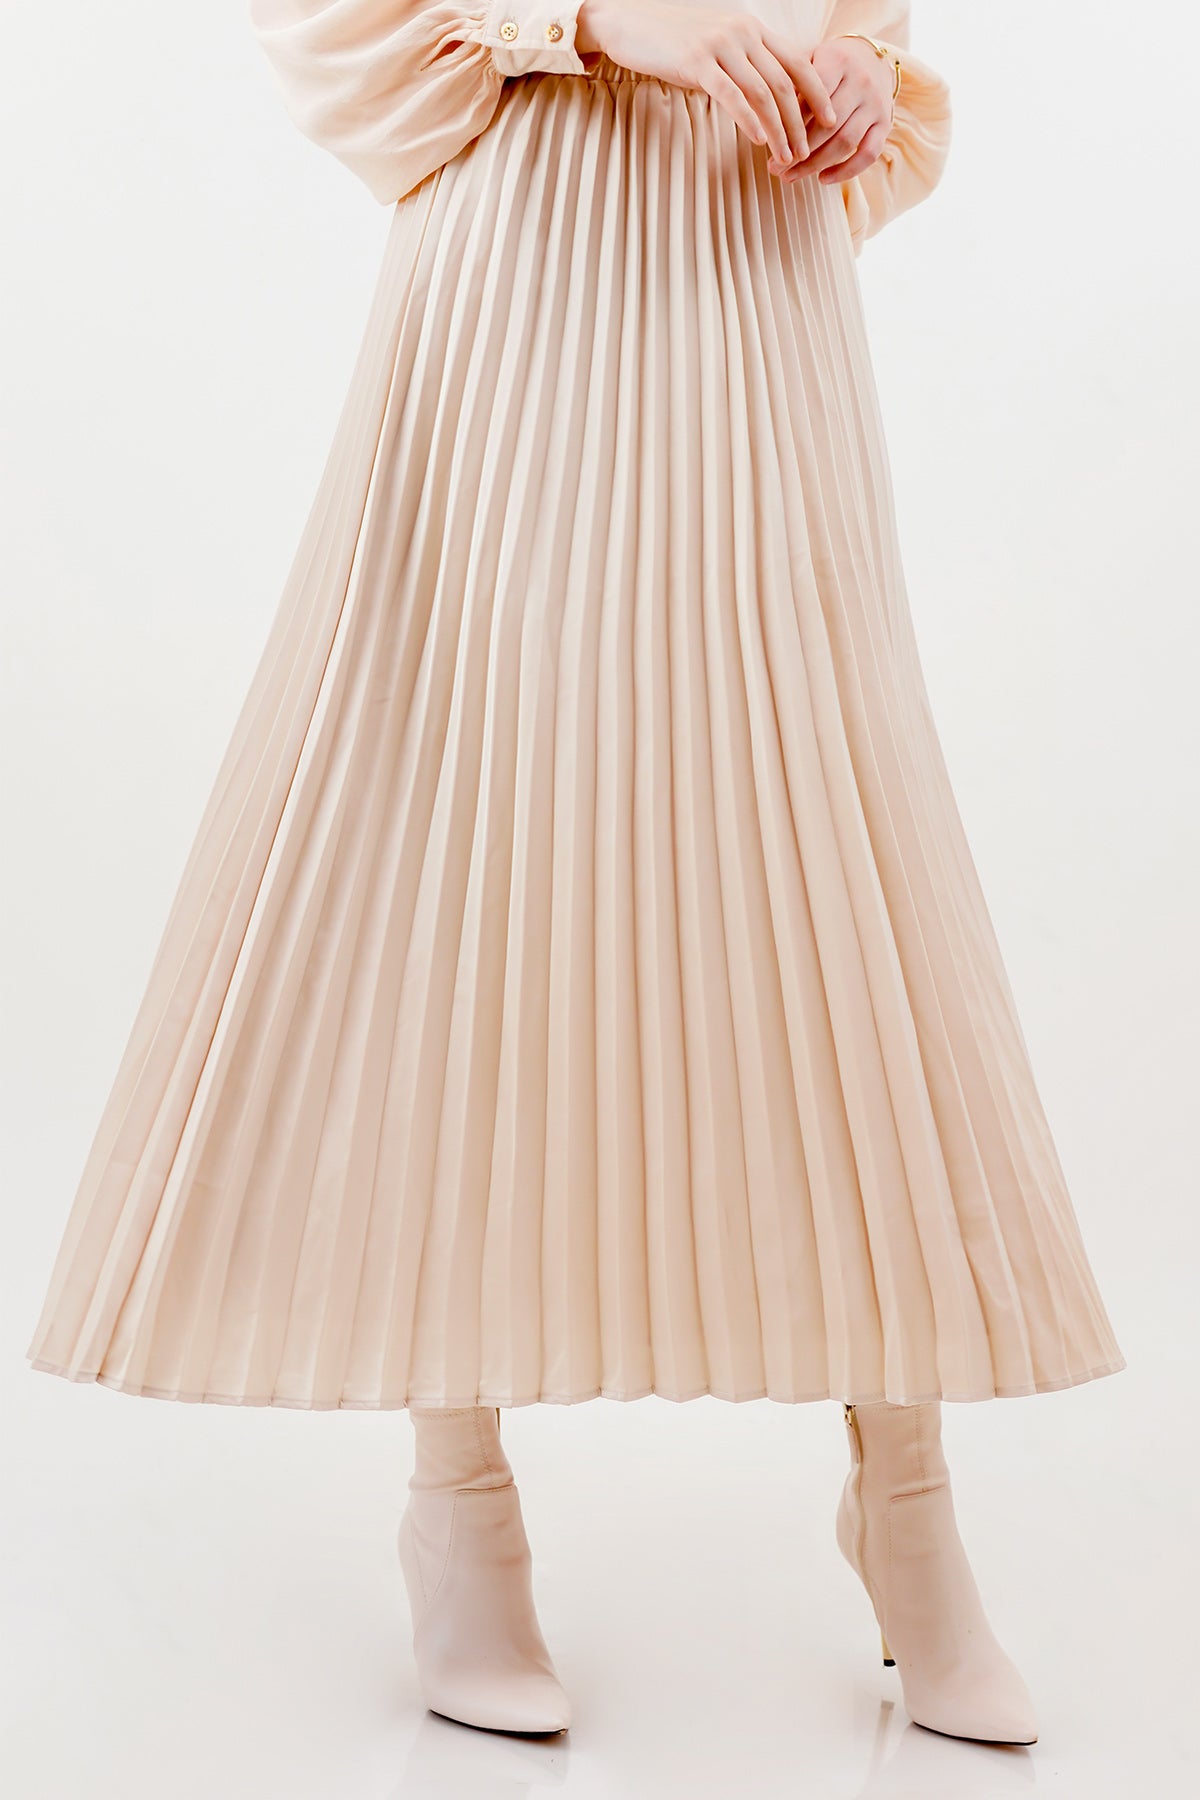 Satin Pleats Skirt - Cream